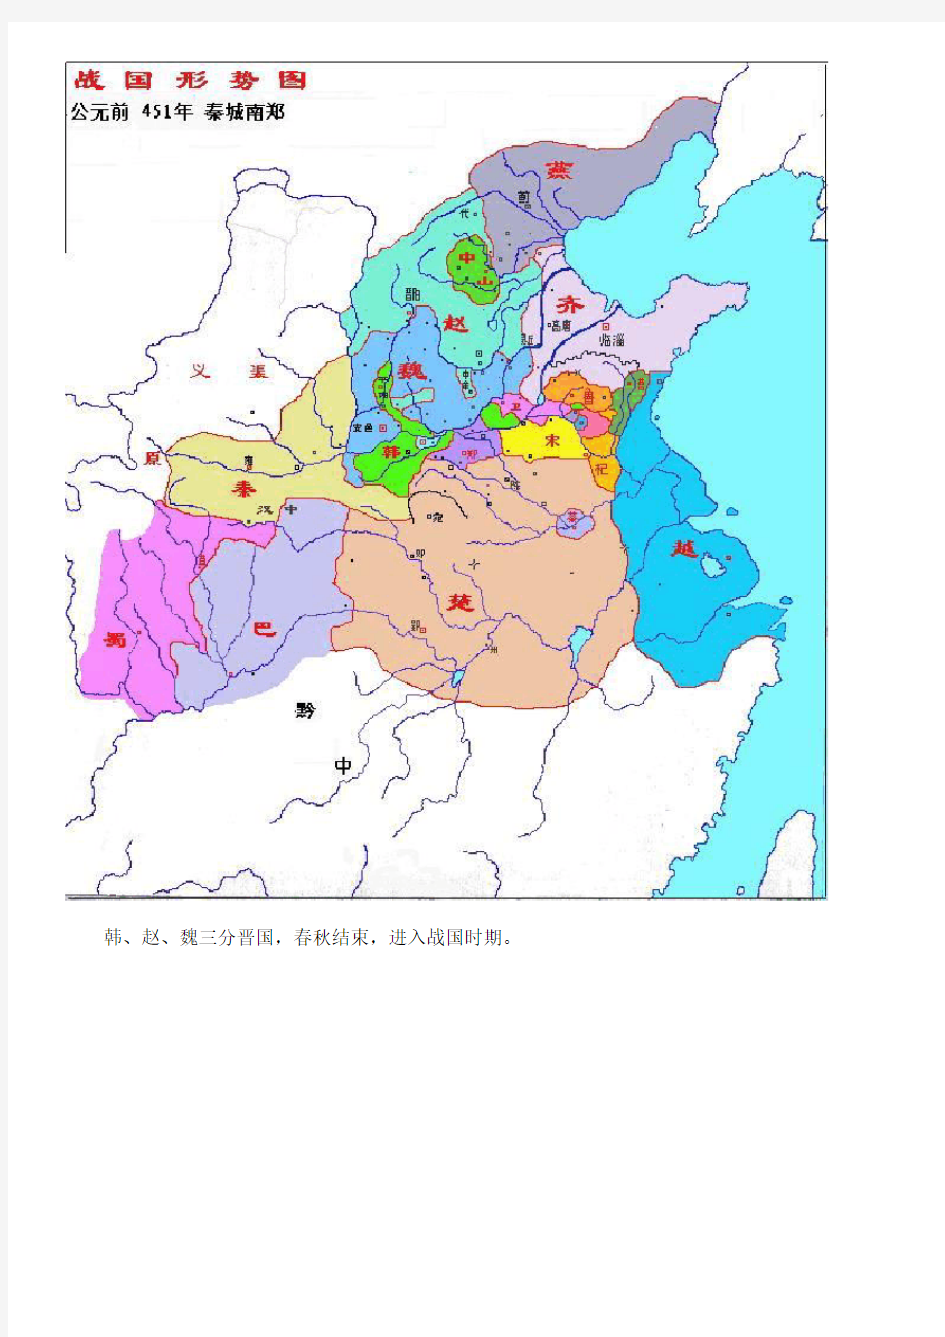 春秋战国时期地图